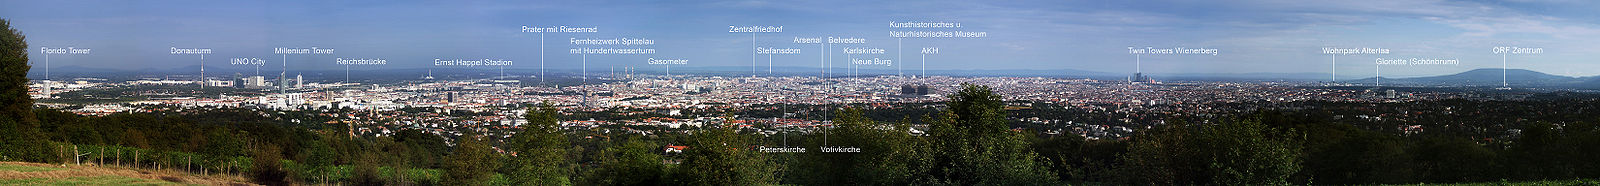 Panorama von Wien vom &amp;amp;quot;Himmel&amp;amp;quot; aus gesehen (2005)